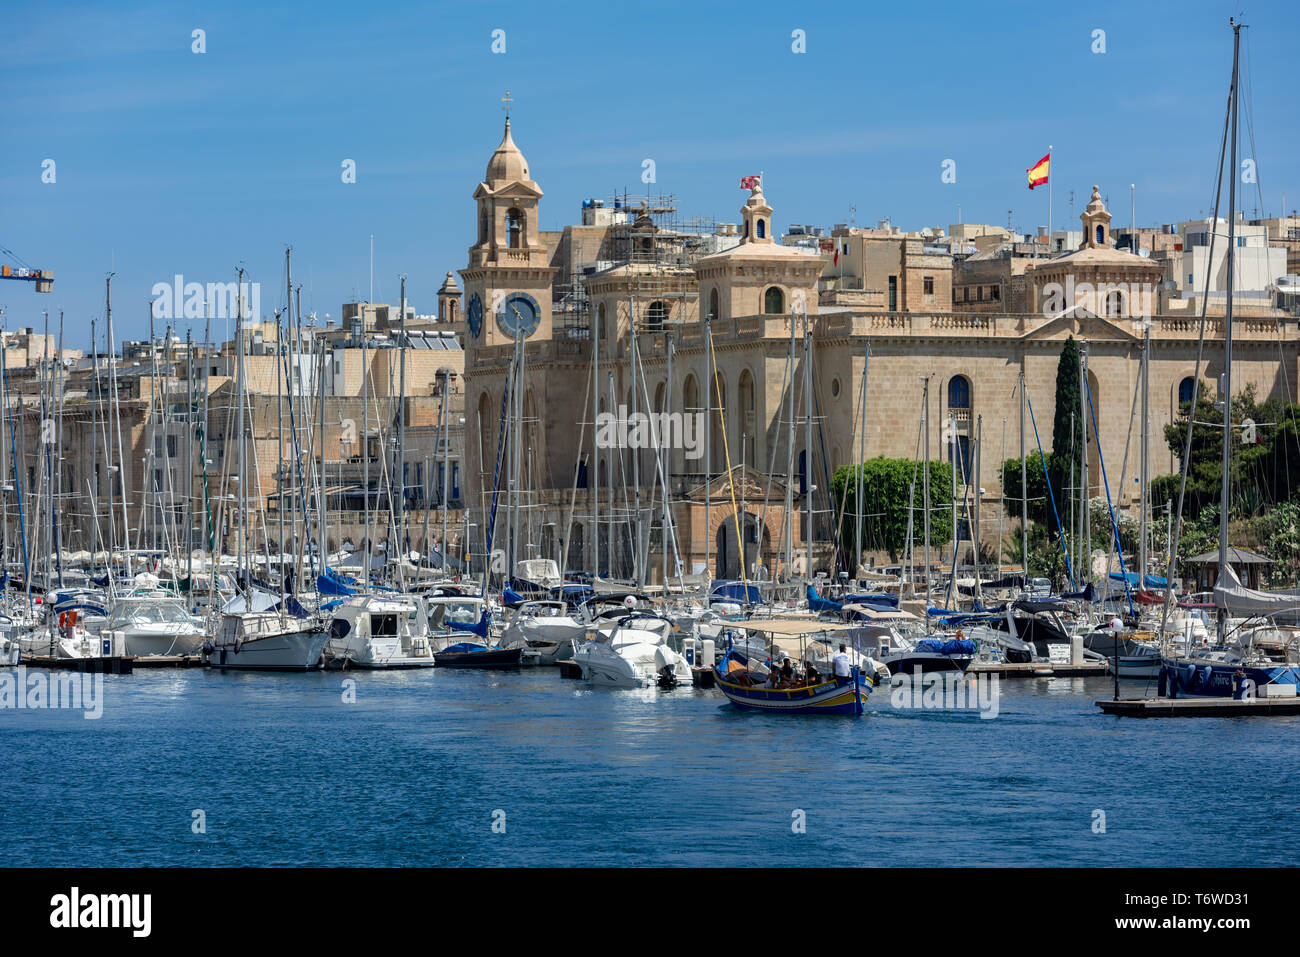 Il Museo Marittimo di Malta si affaccia sul lungomare di Vittoriosa sulle numerose barche che affollano il Grand Harbour Marina di il-Birgu Foto Stock